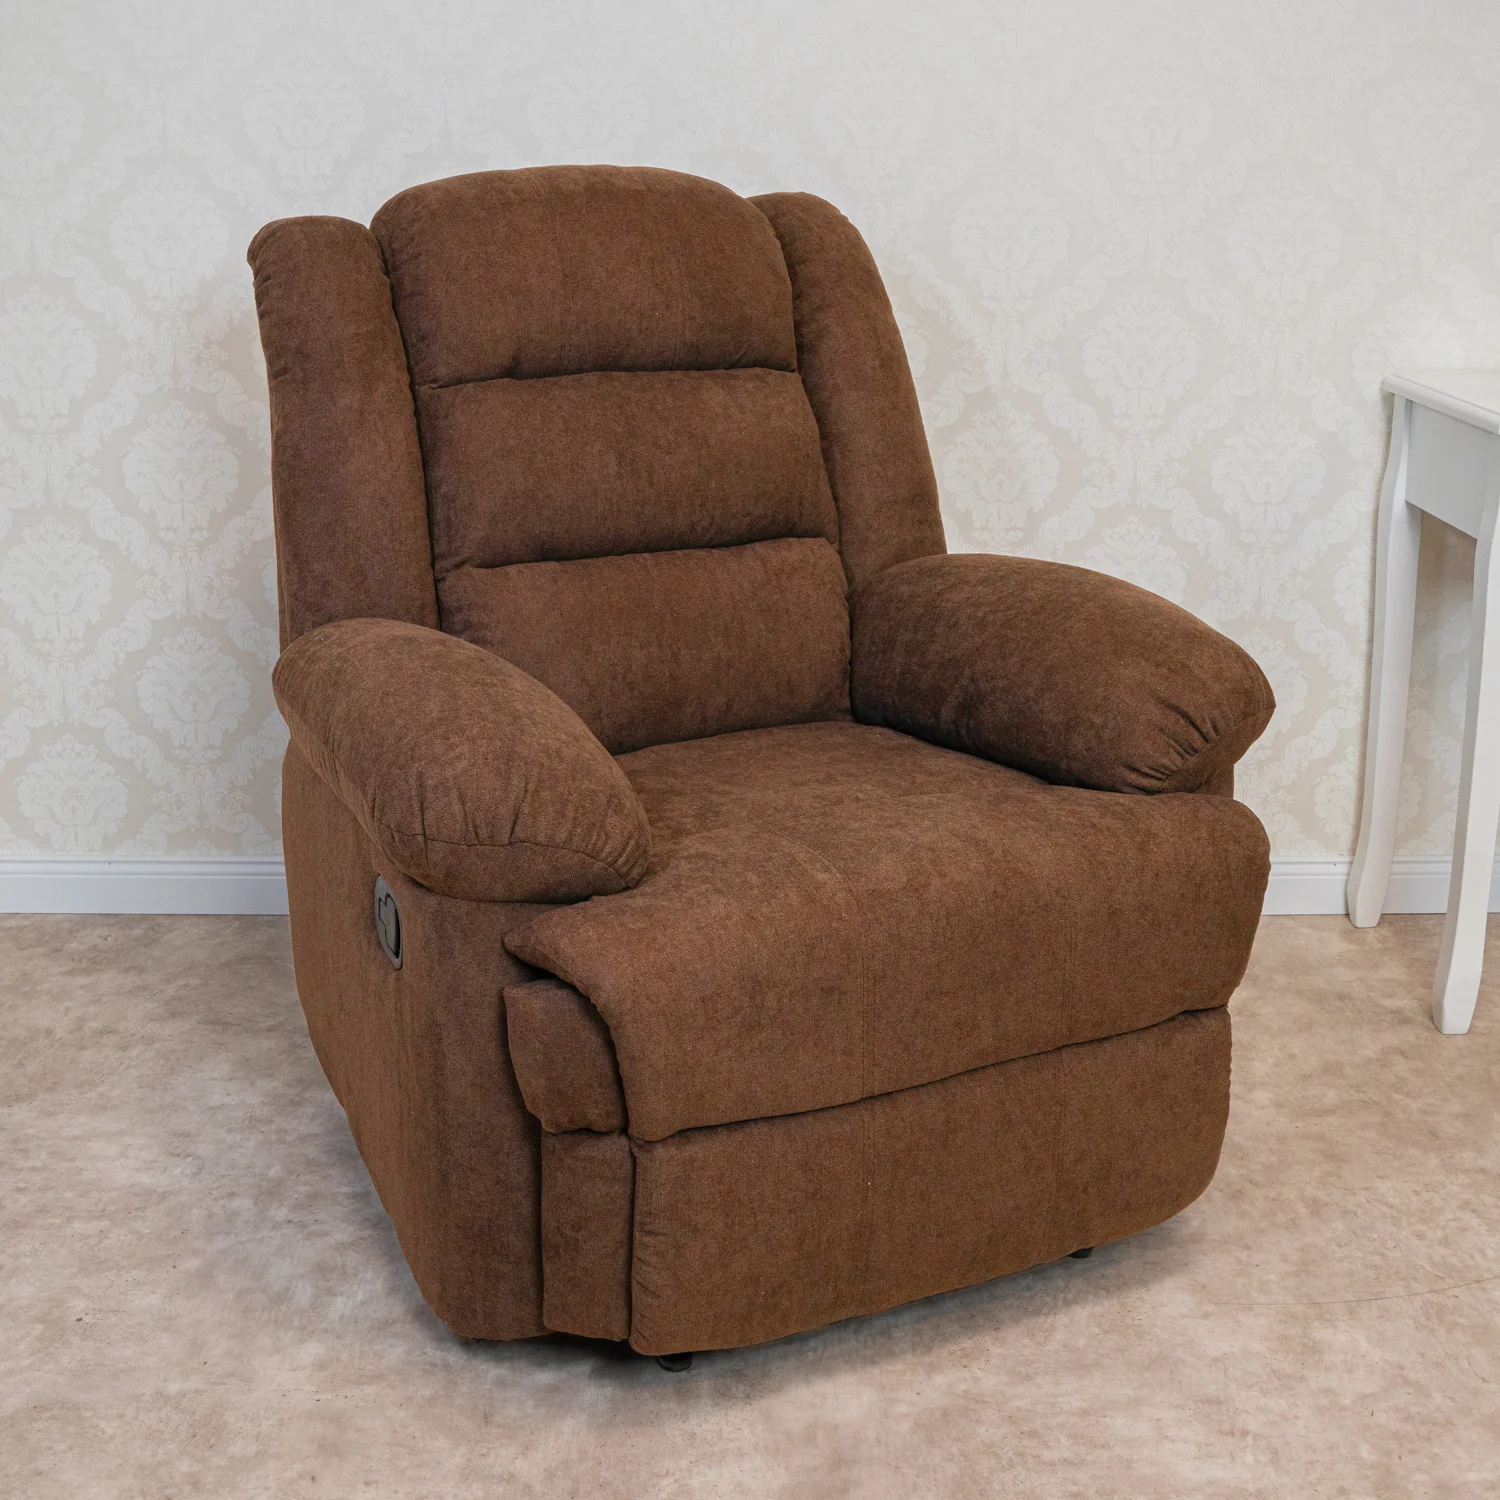 Fekvőfotel, relax fotelágy dönthető háttámlával, lábtartóval barna szövet (8002-BROWN)